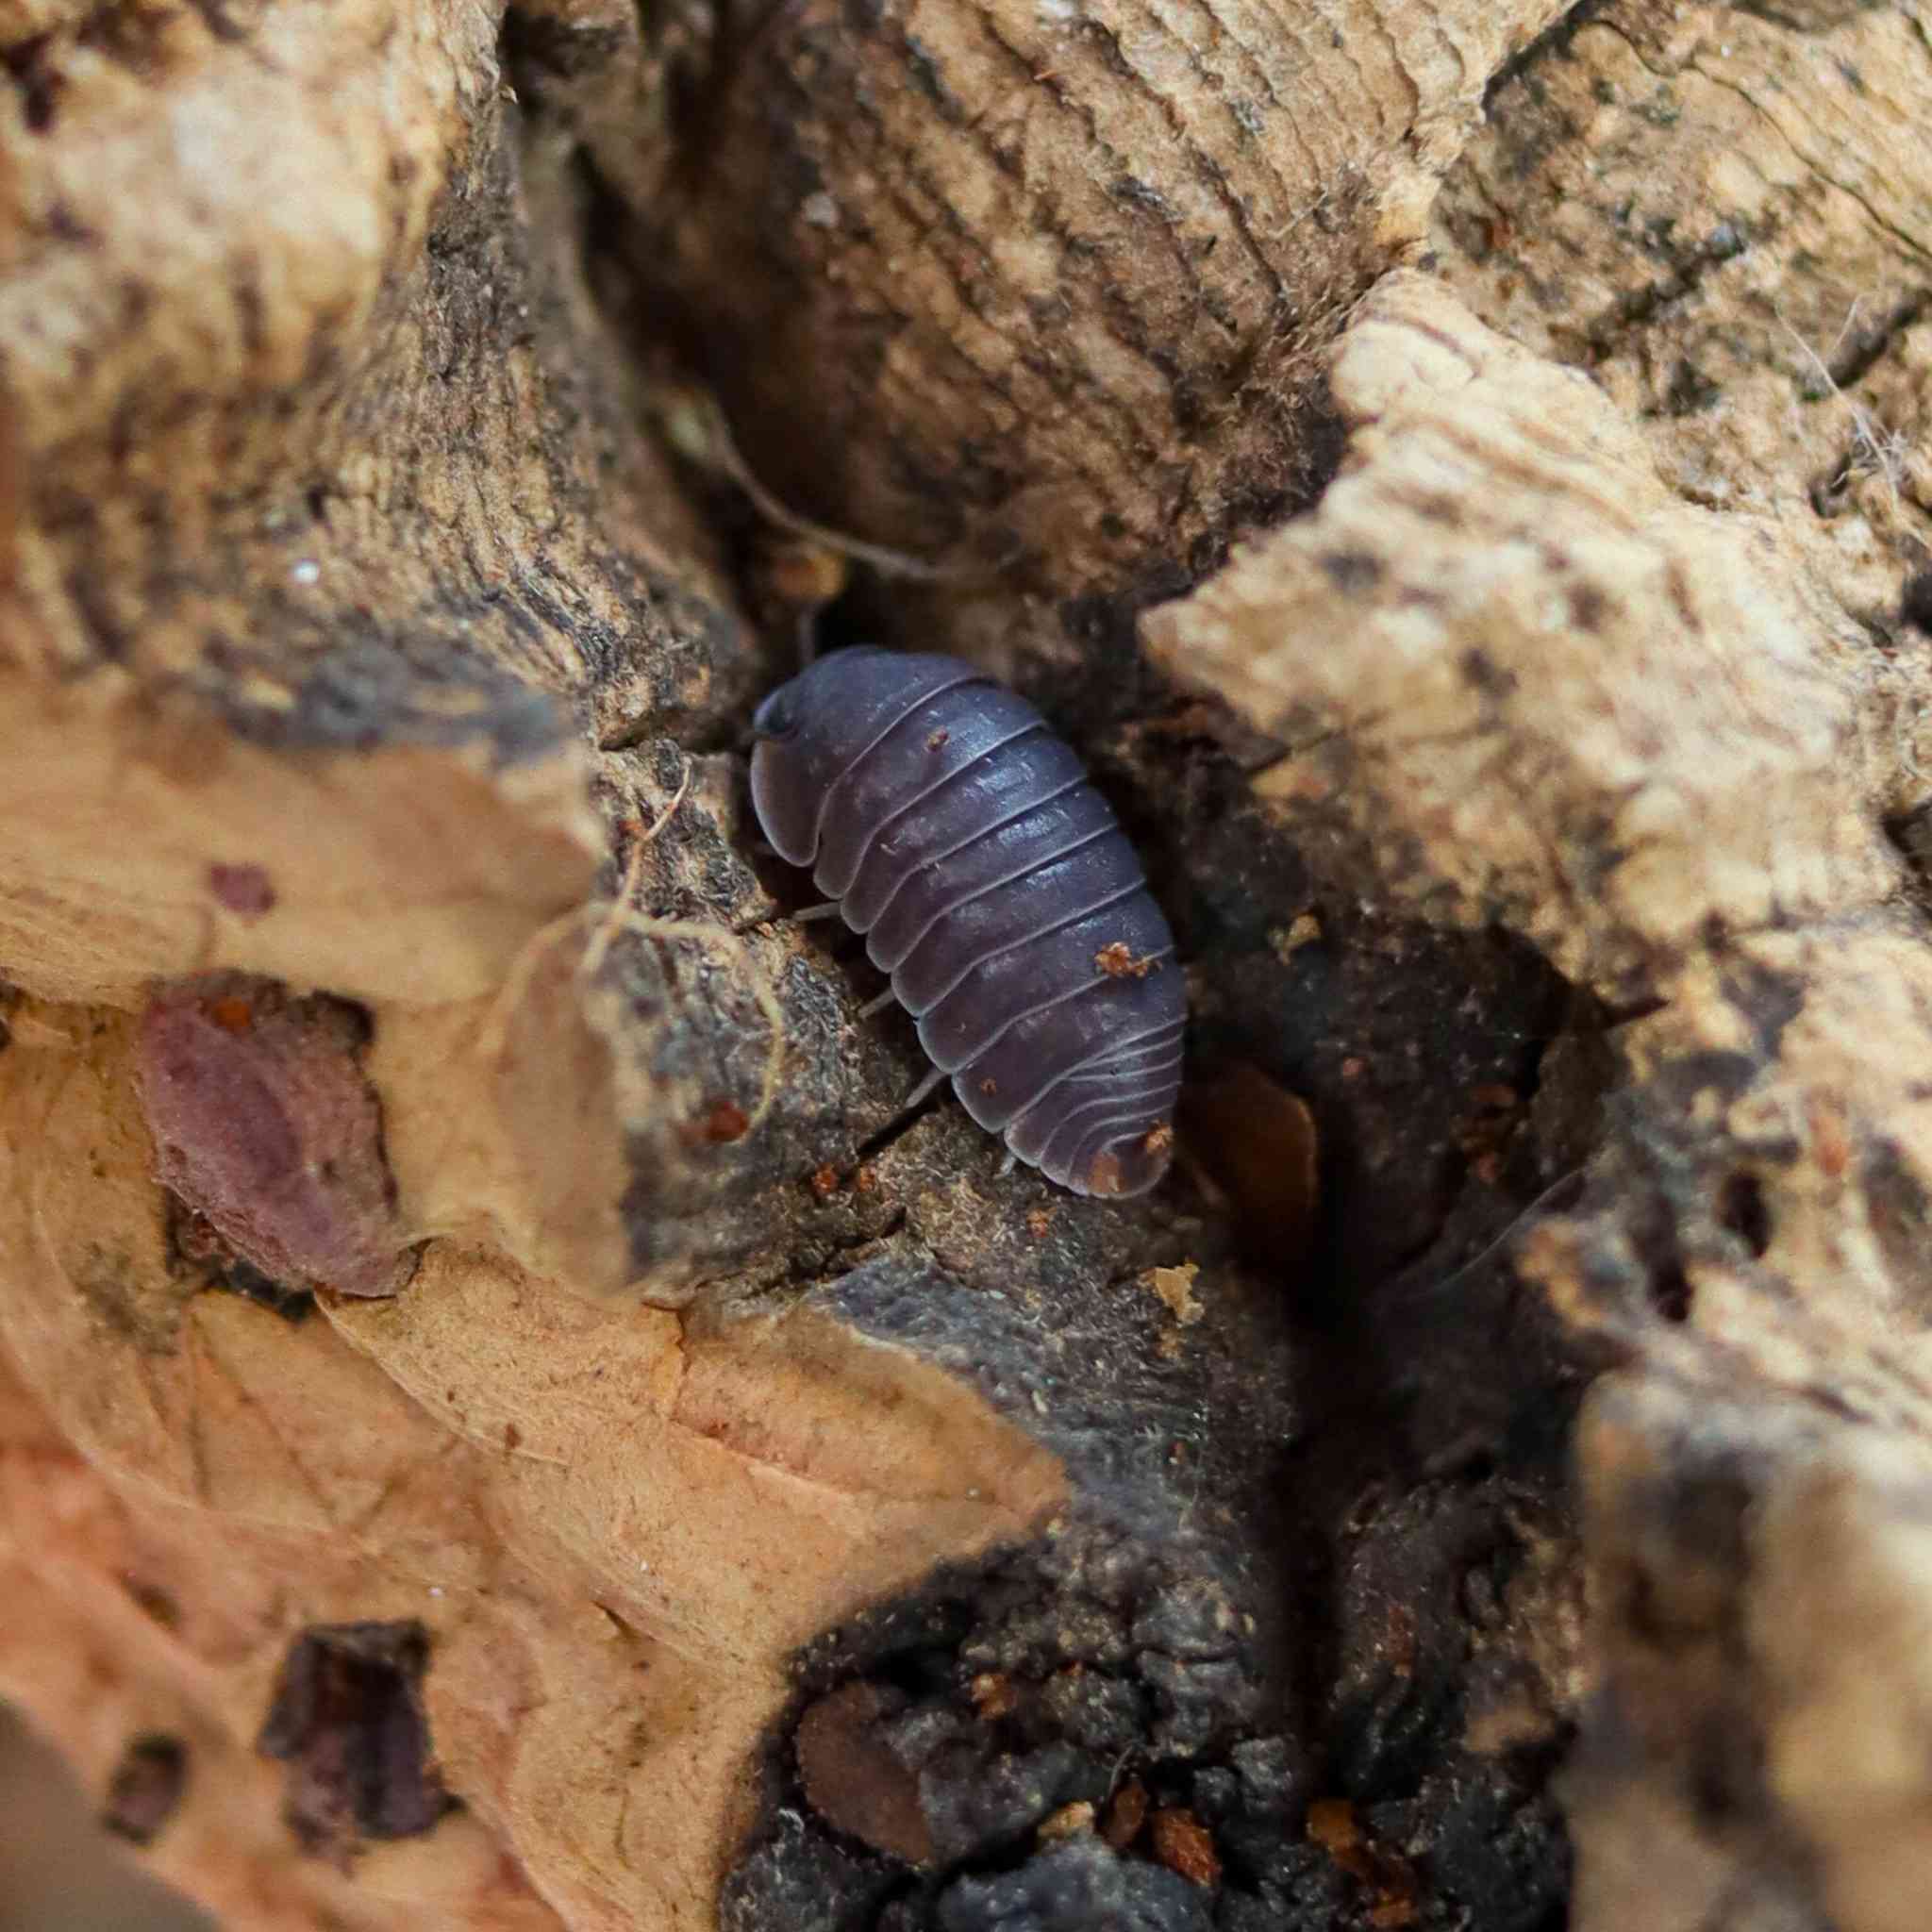 cubaris murina isopod hiding in wood